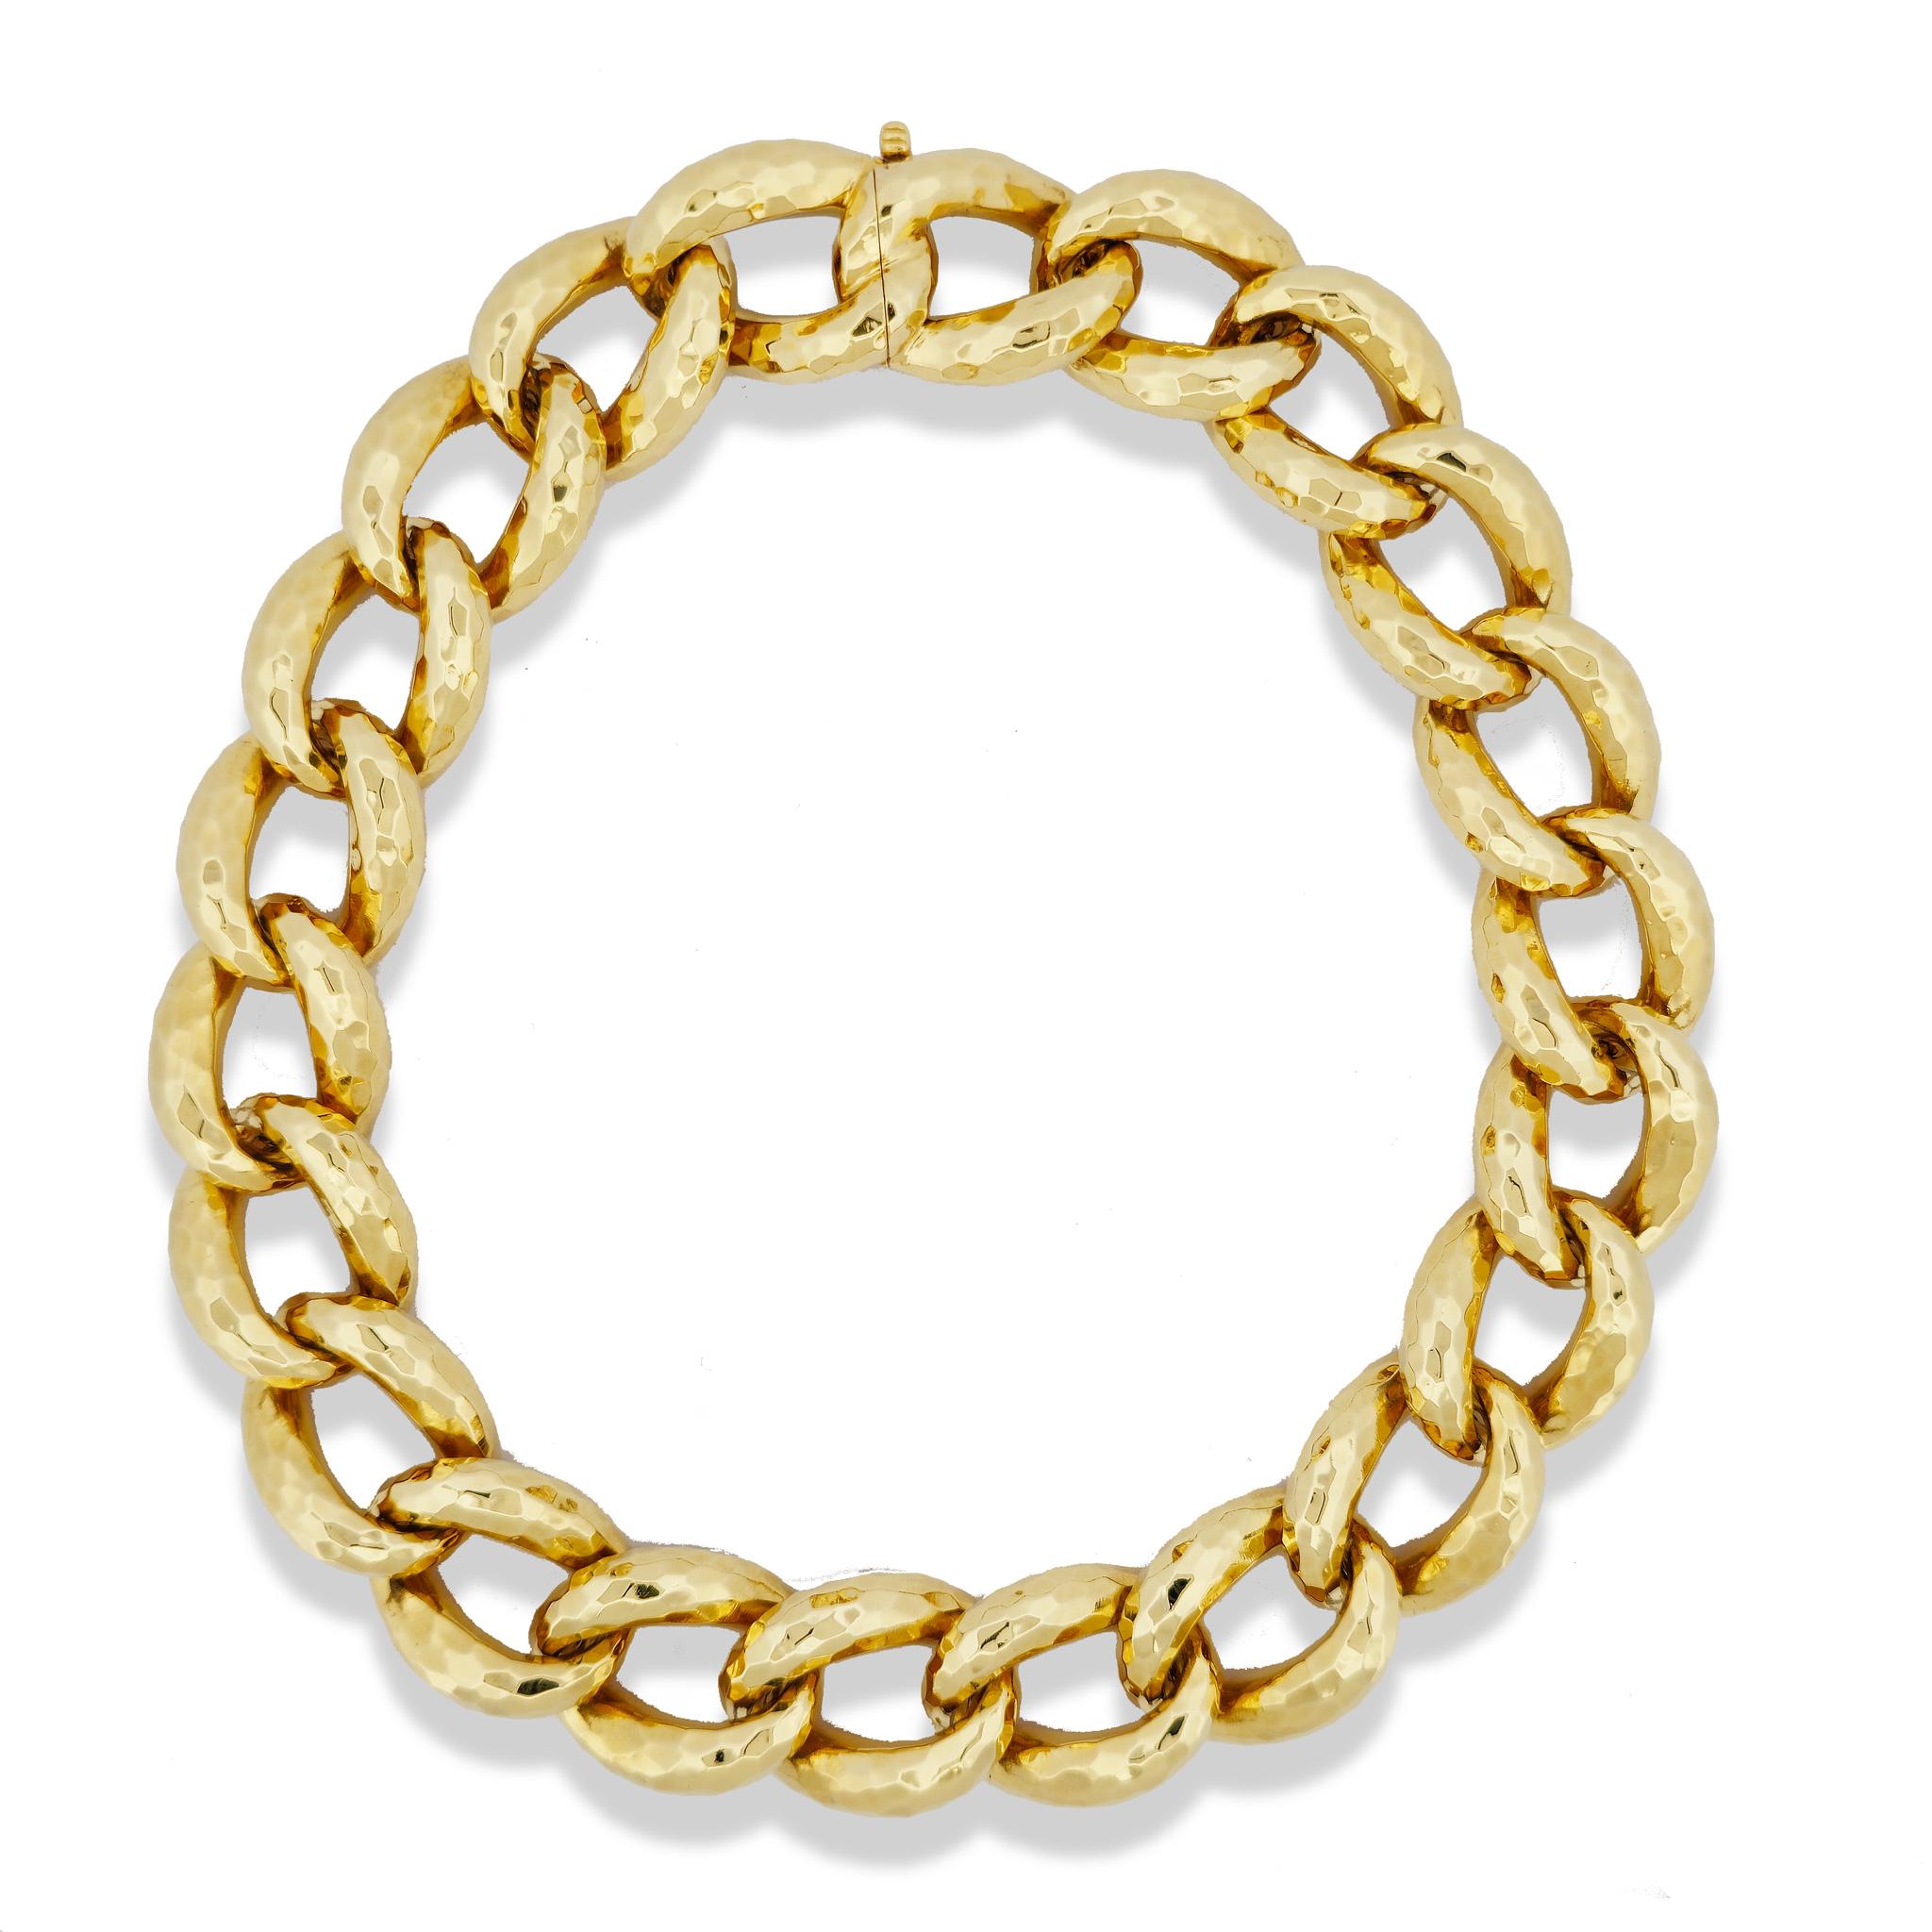 Ornez vous de l'étonnant et remarquable collier Henry Dunay en or jaune 18 carats à facettes Cynabar. 

Cette pièce de collection des années 1980 présente une largeur de 22,40 mm et une chaîne de 16 pouces de long, ce qui est parfait pour faire une